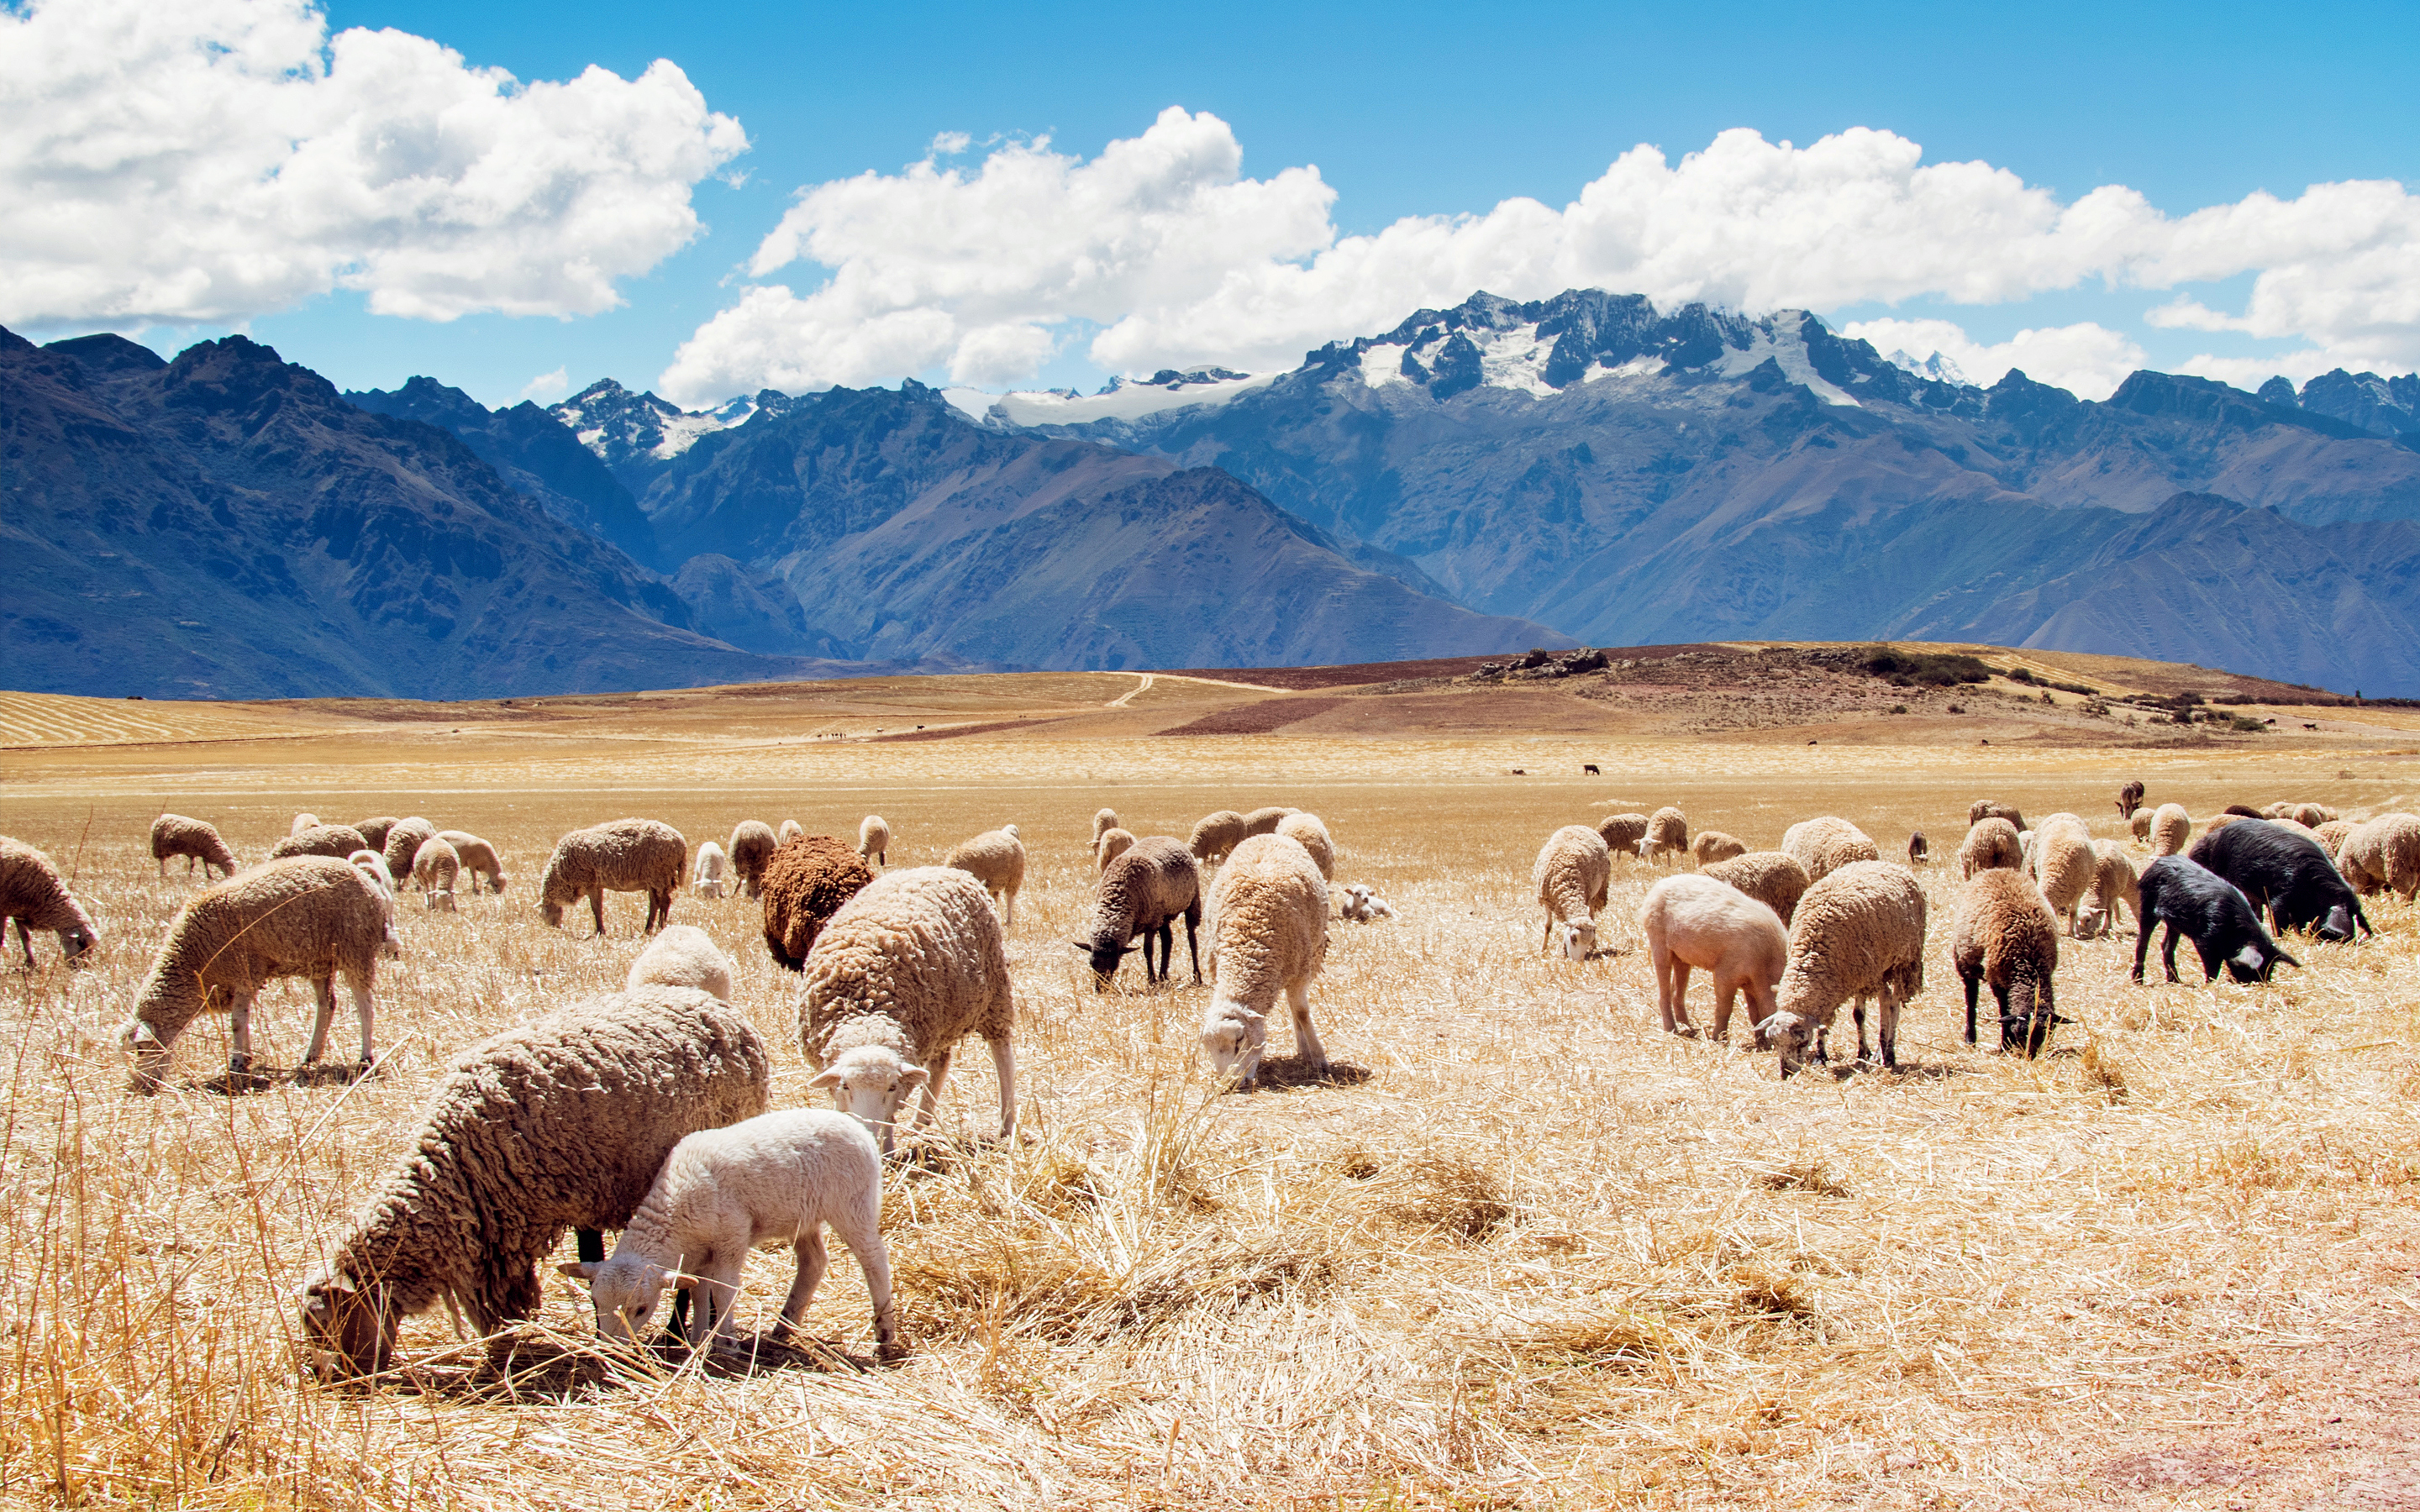 Peru Sheep Fields7166214404 - Peru Sheep Fields - Sheep, Pigeon, Peru, fields